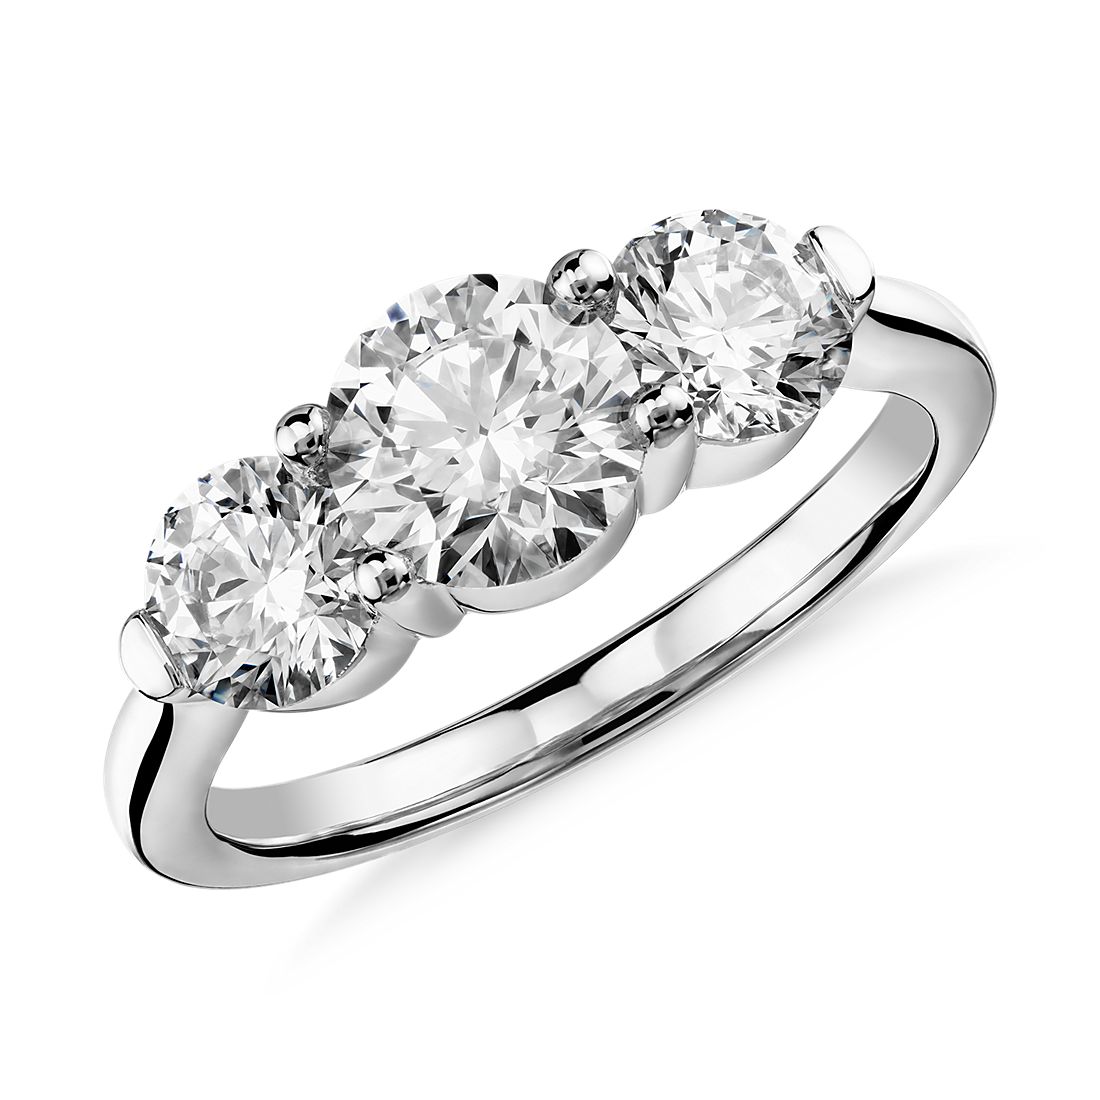 Blue Nile Signature Comfort Fit Three-Stone Diamond Ring in Platinum (2 ct. tw.)